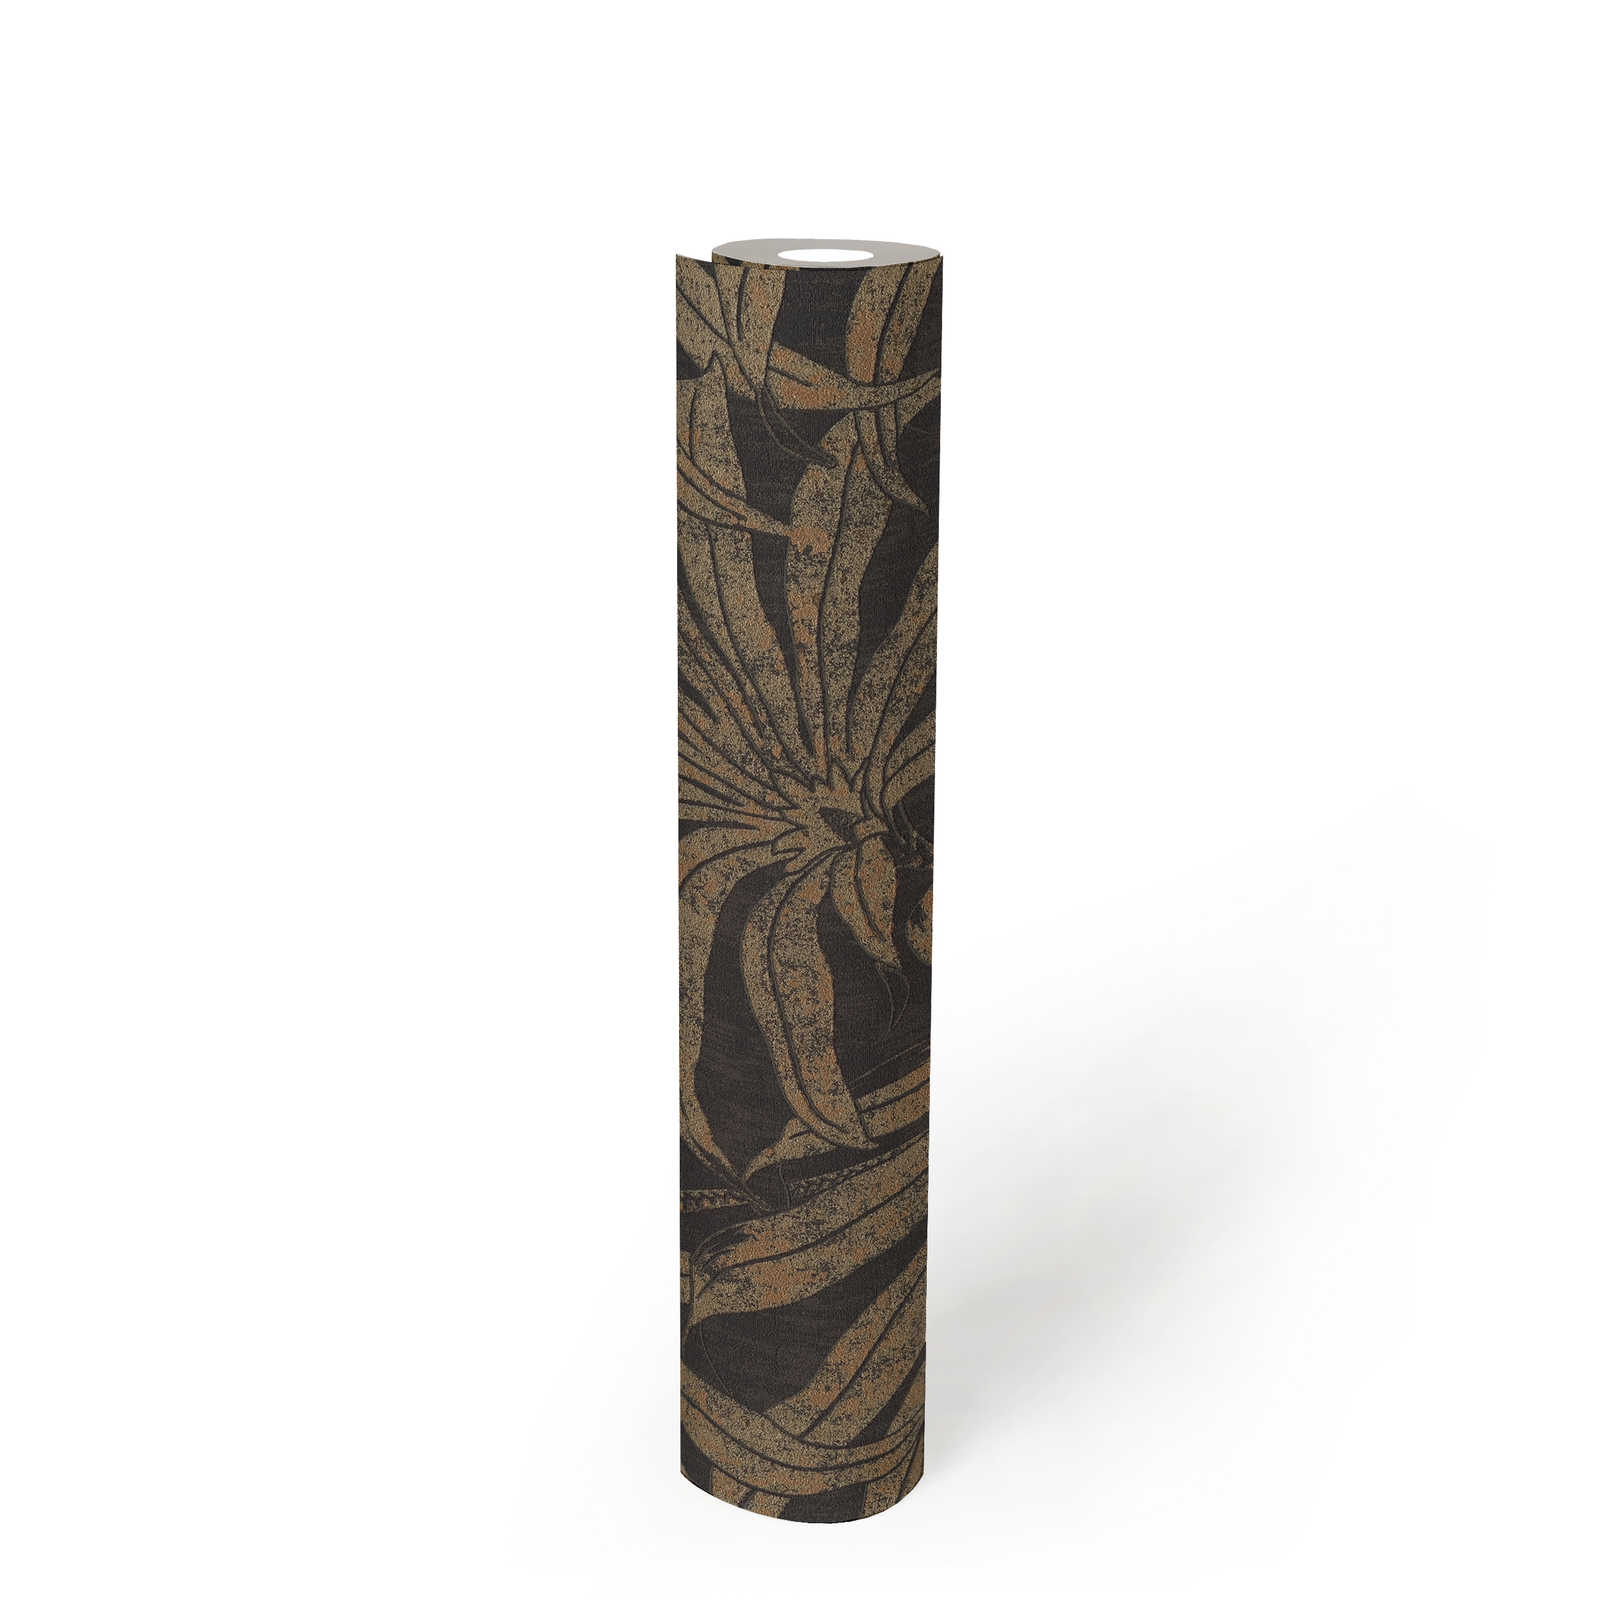             Edle Mustertapete mit Dschungelblütendesign – Schwarz, Gold, Bronze
        